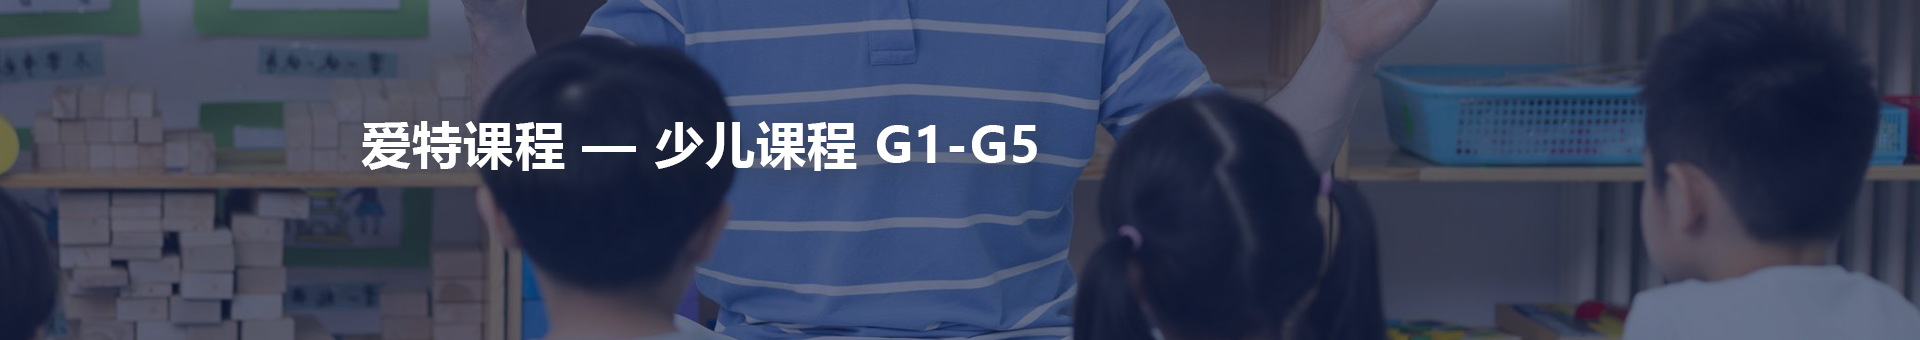 少儿课程 G1-G5